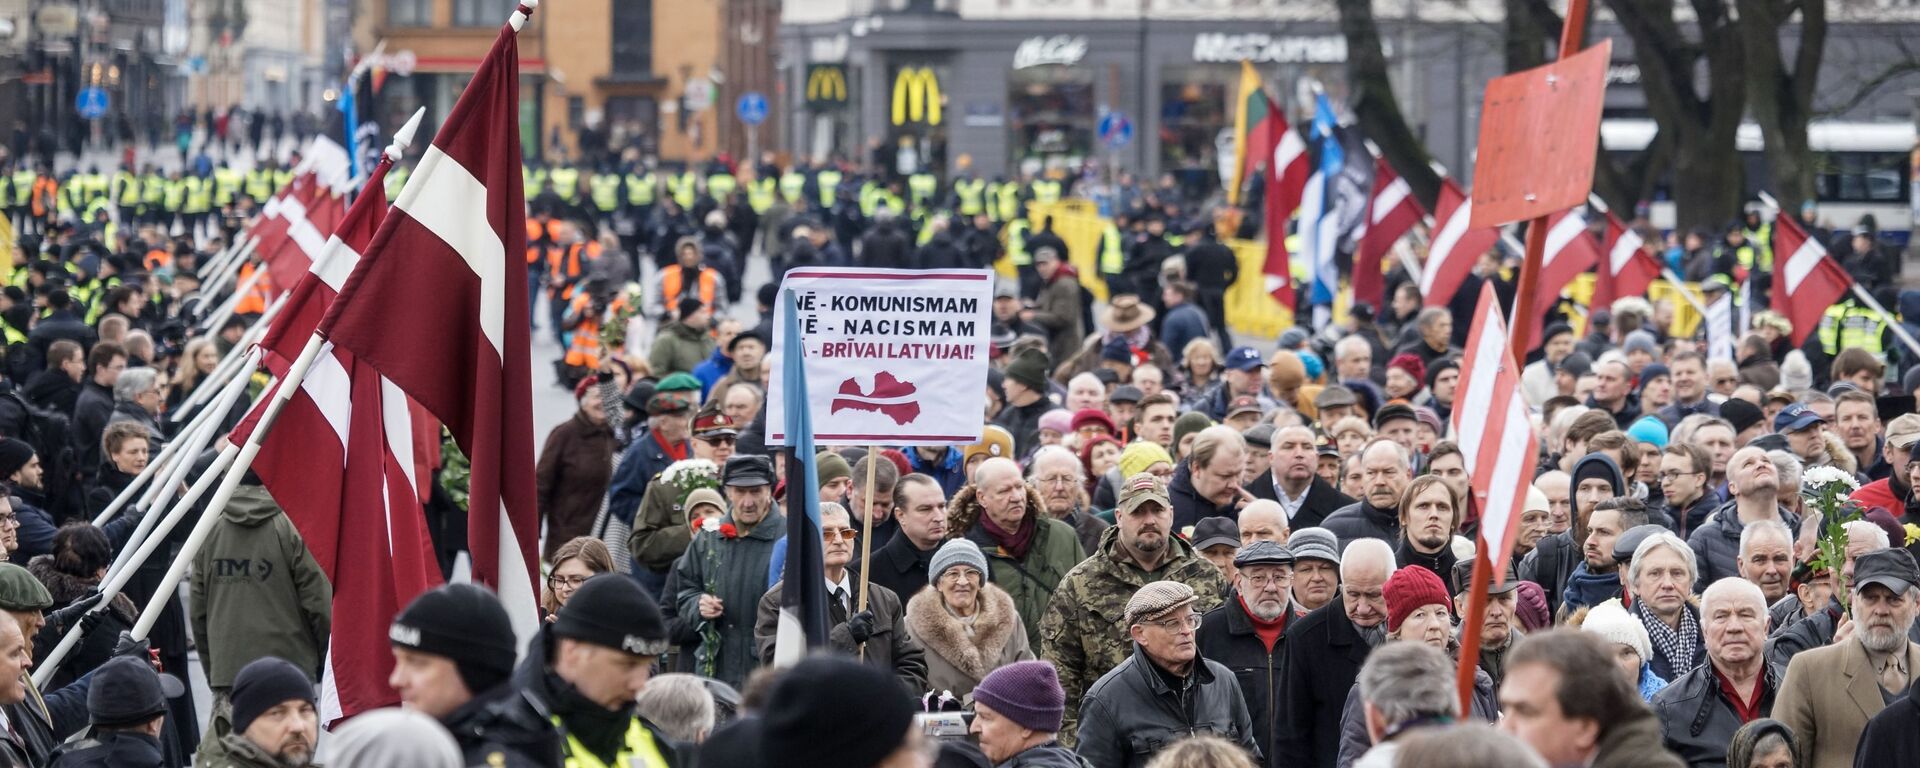 Шествие легионеров в Риге 16 марта 2019 - Sputnik Латвия, 1920, 08.09.2021